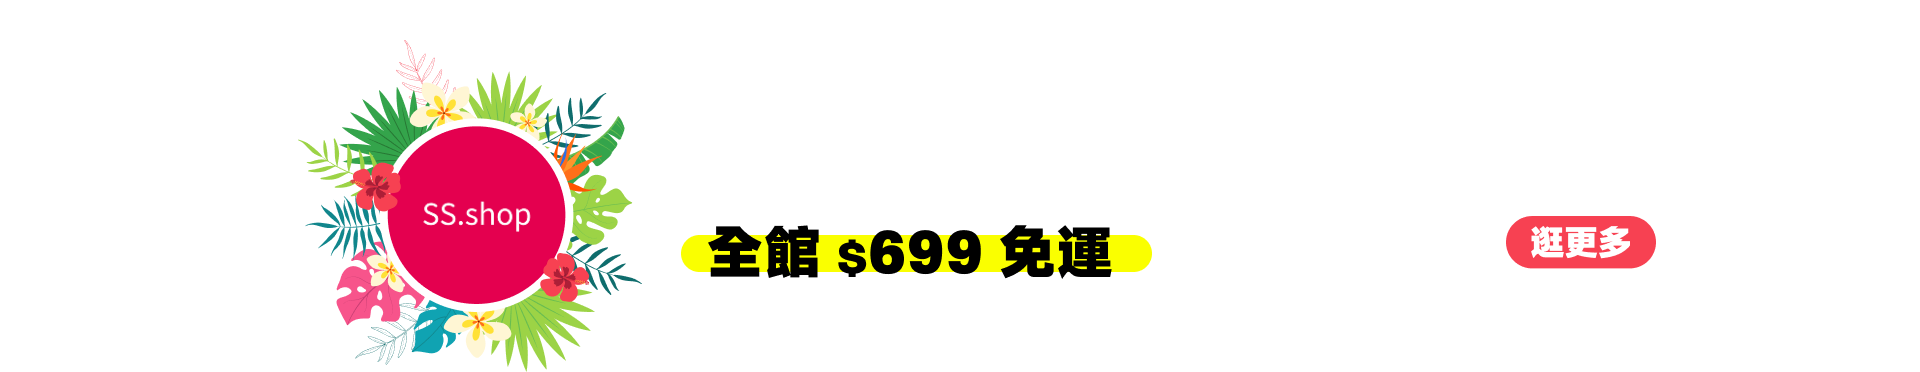 SS.shop pc